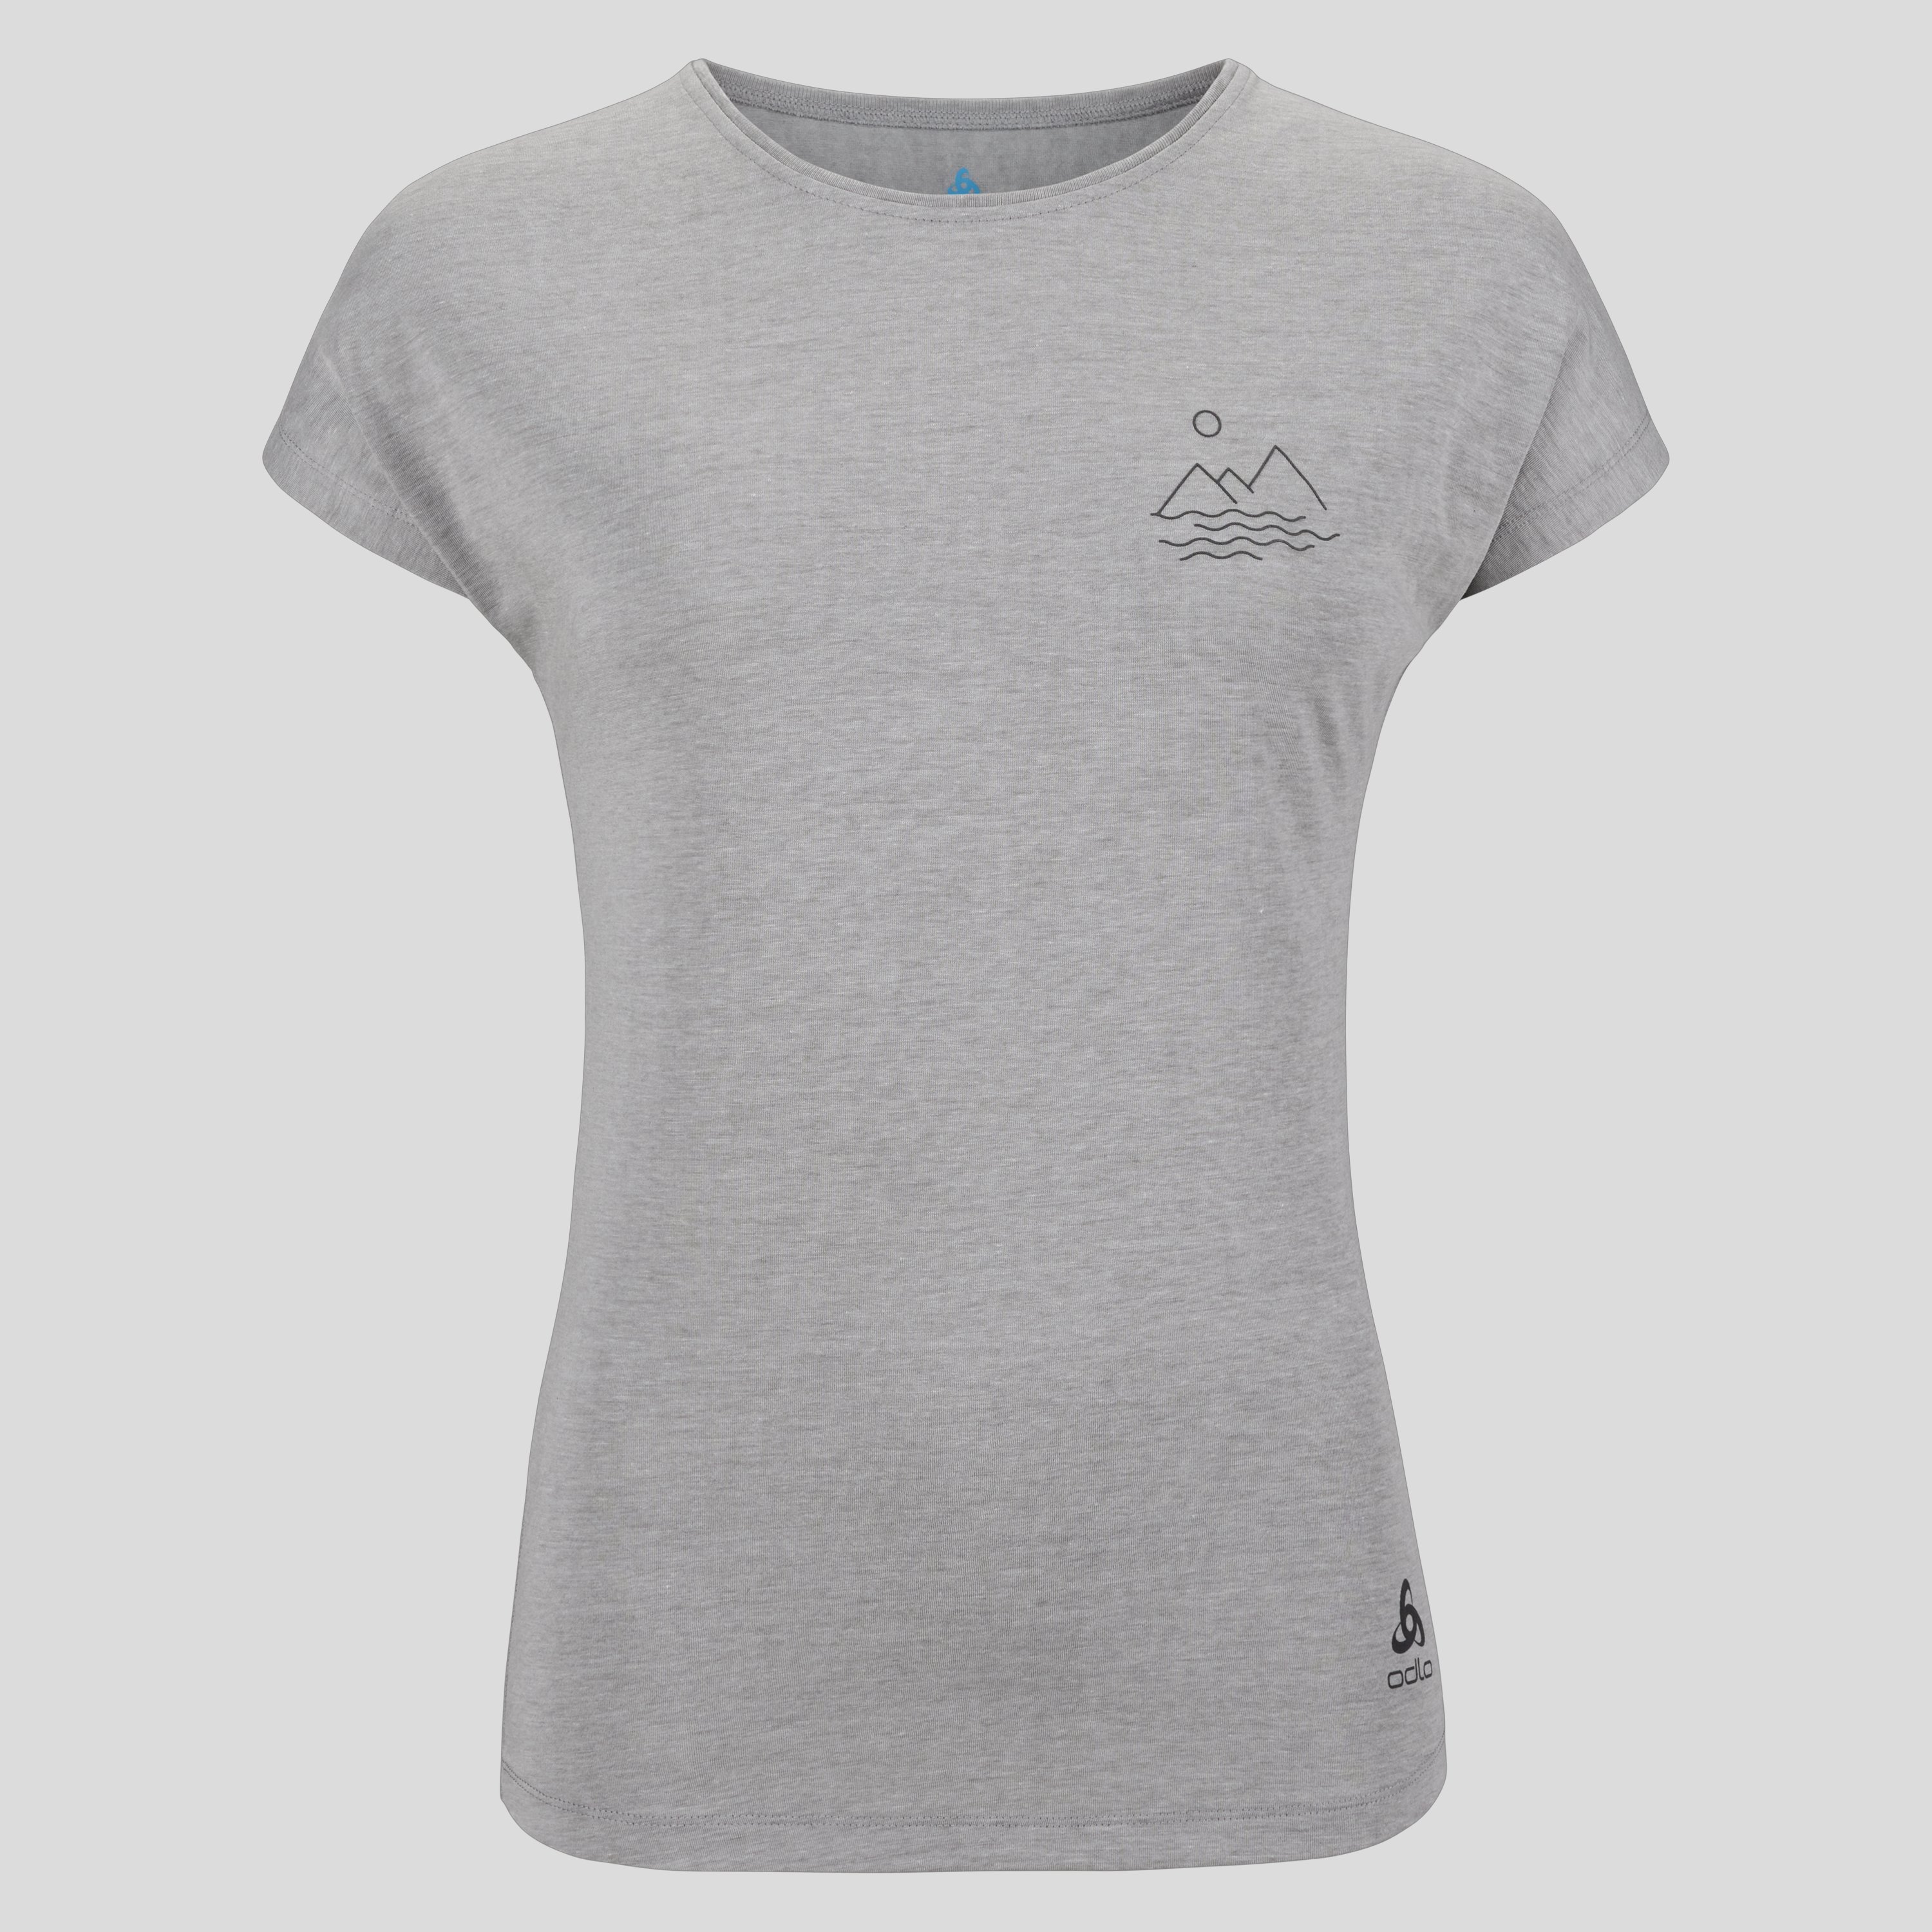 ODLO Ascent 365 T-Shirt mit einfachem Landschaftsprint für Damen, S, grau